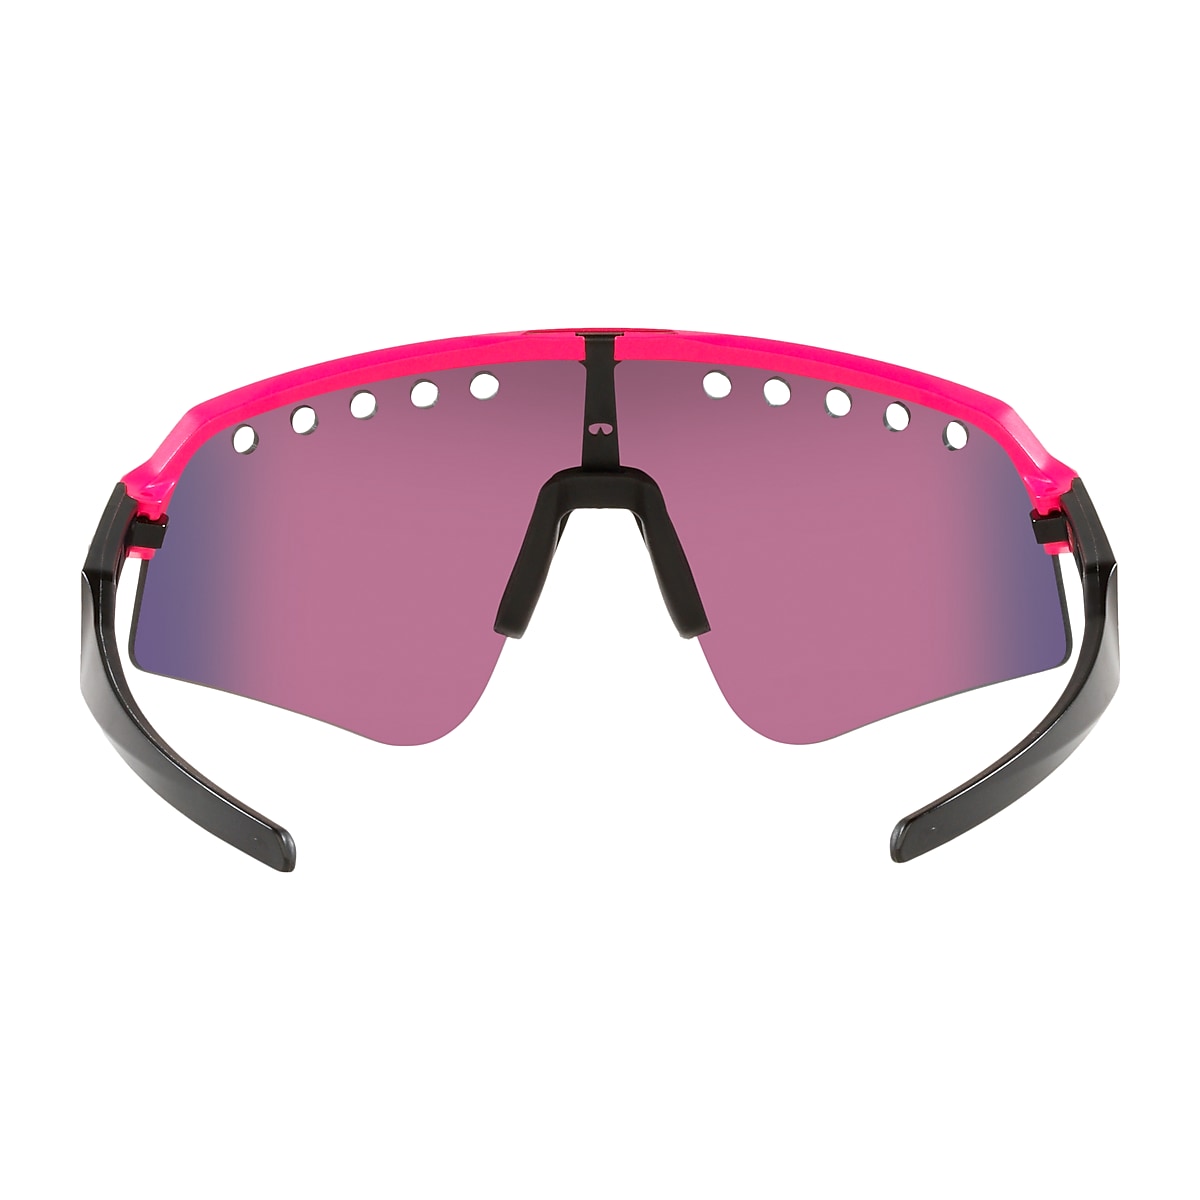 Top 76+ imagen oakley sunglasses pink